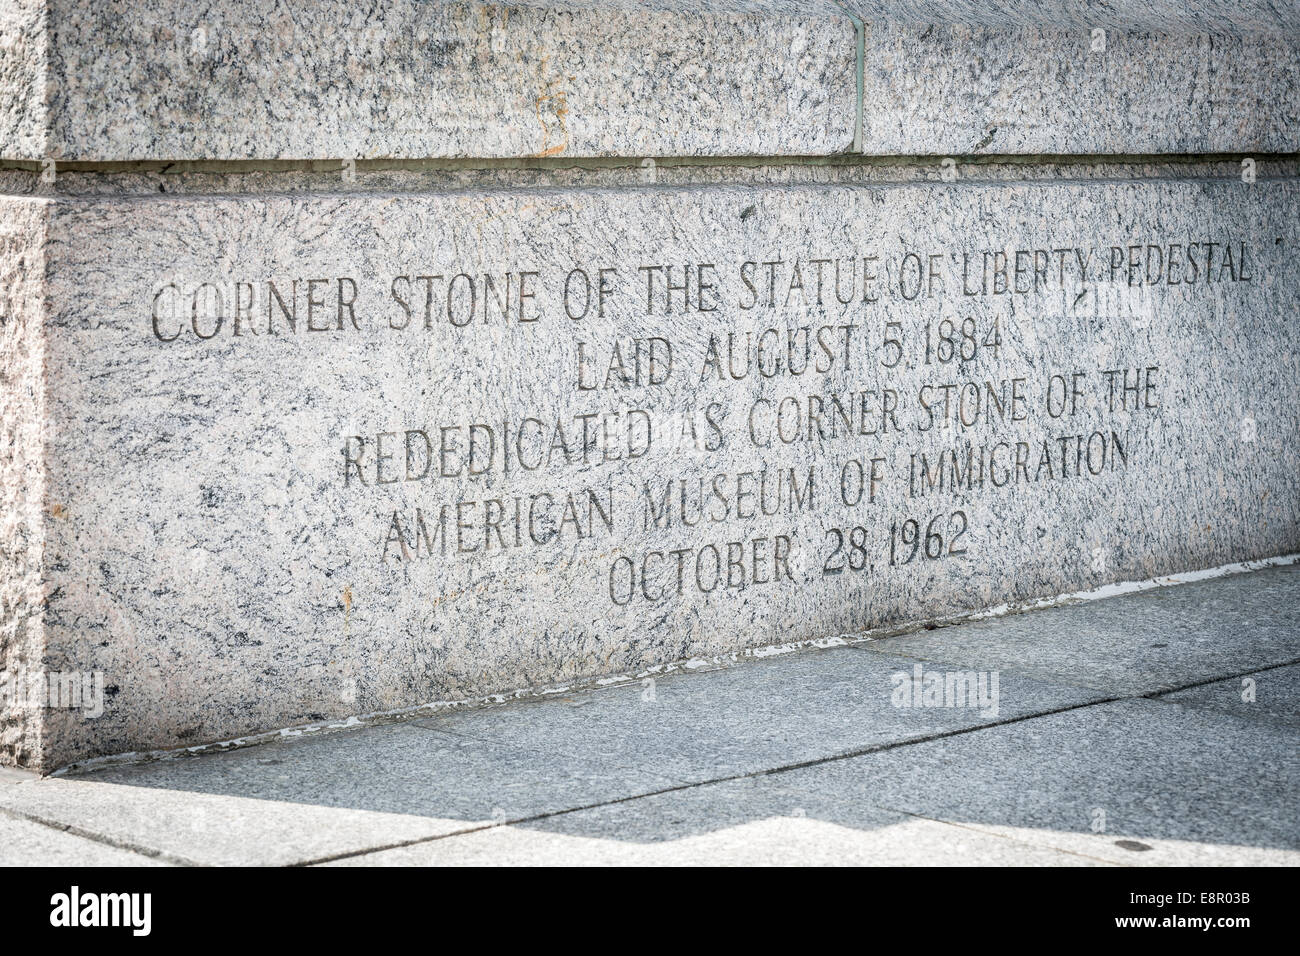 La pietra angolare della Statua della Libertà piedistallo, di cui il 5 agosto 1884 - Liberty Island, New York - STATI UNITI D'AMERICA. Foto Stock